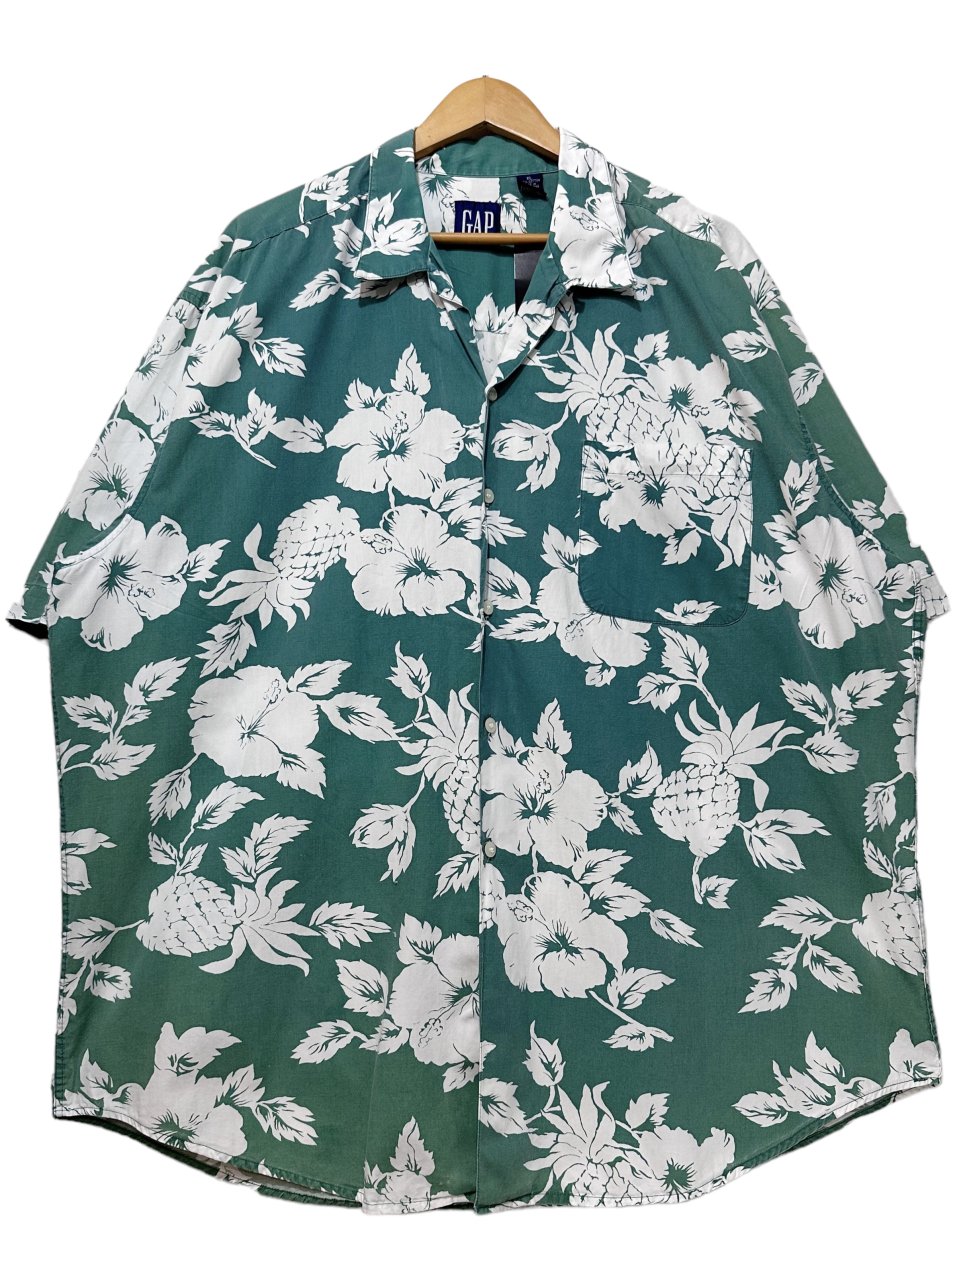 90s OLD GAP Cotton Aloha Shirt 緑 XL オールドギャップ 半袖 アロハ ...